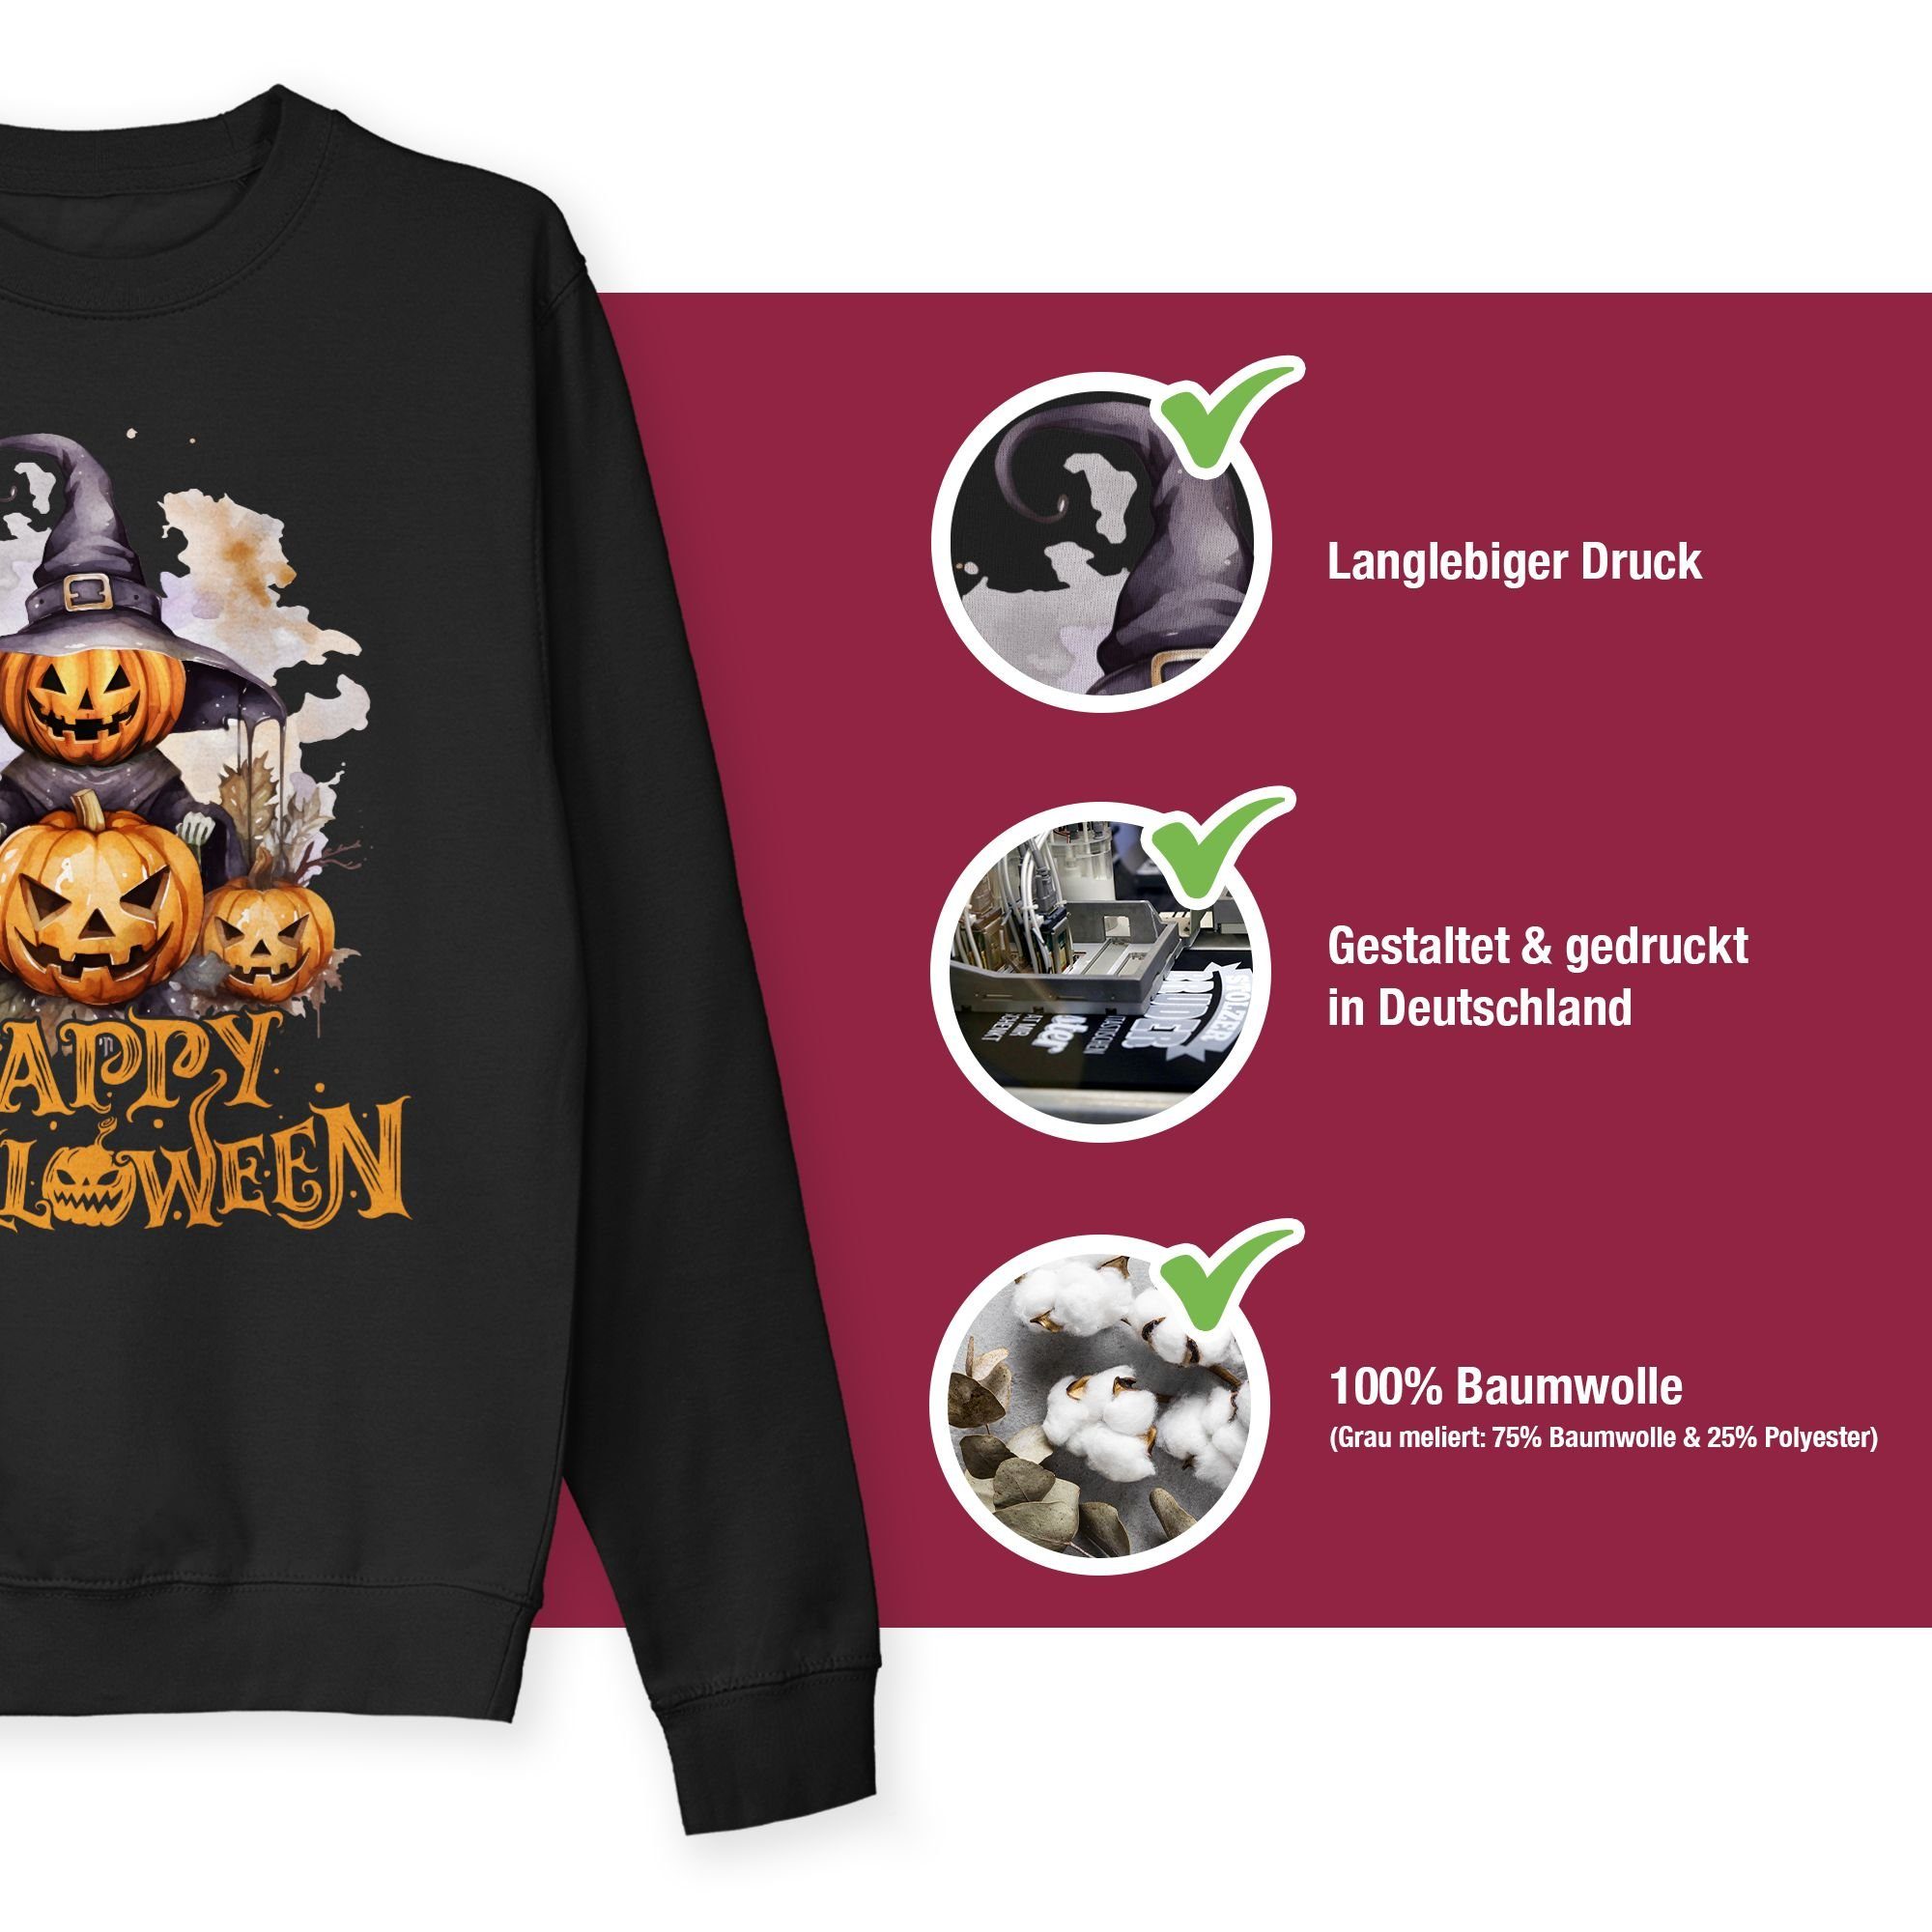 Shirtracer Sweatshirt Happy Halloween Kostüme Hexe Schwarz Damen Gruselig Kürbis Kürbiskopf 1 Halloween (1-tlg)